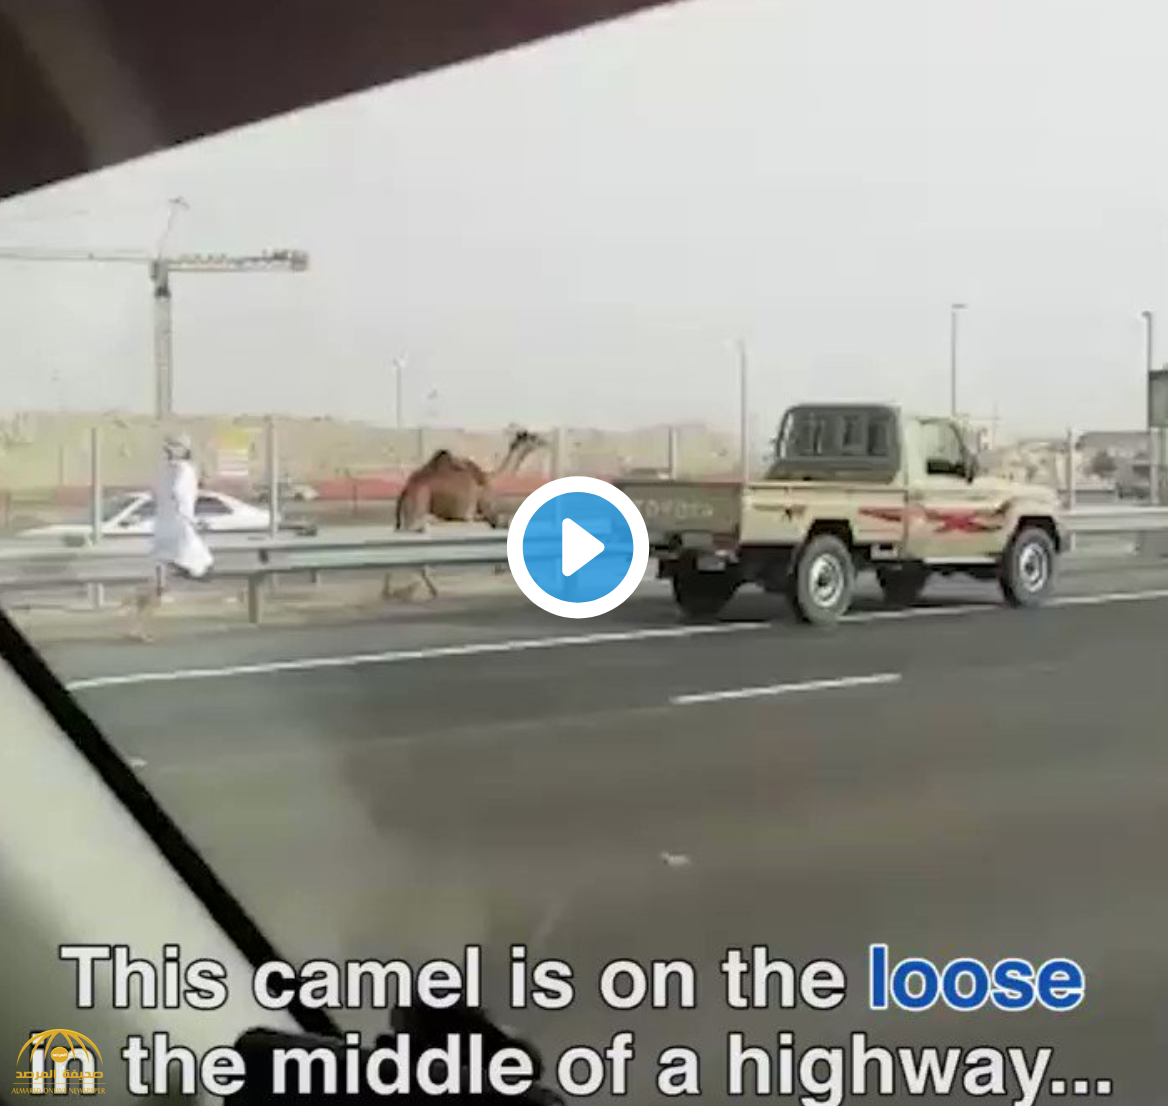 فيديو : شاهد .. إماراتي يركض وراء جمله الهارب وسط طريق مزدحم بالسيارات في أبو ظبي !